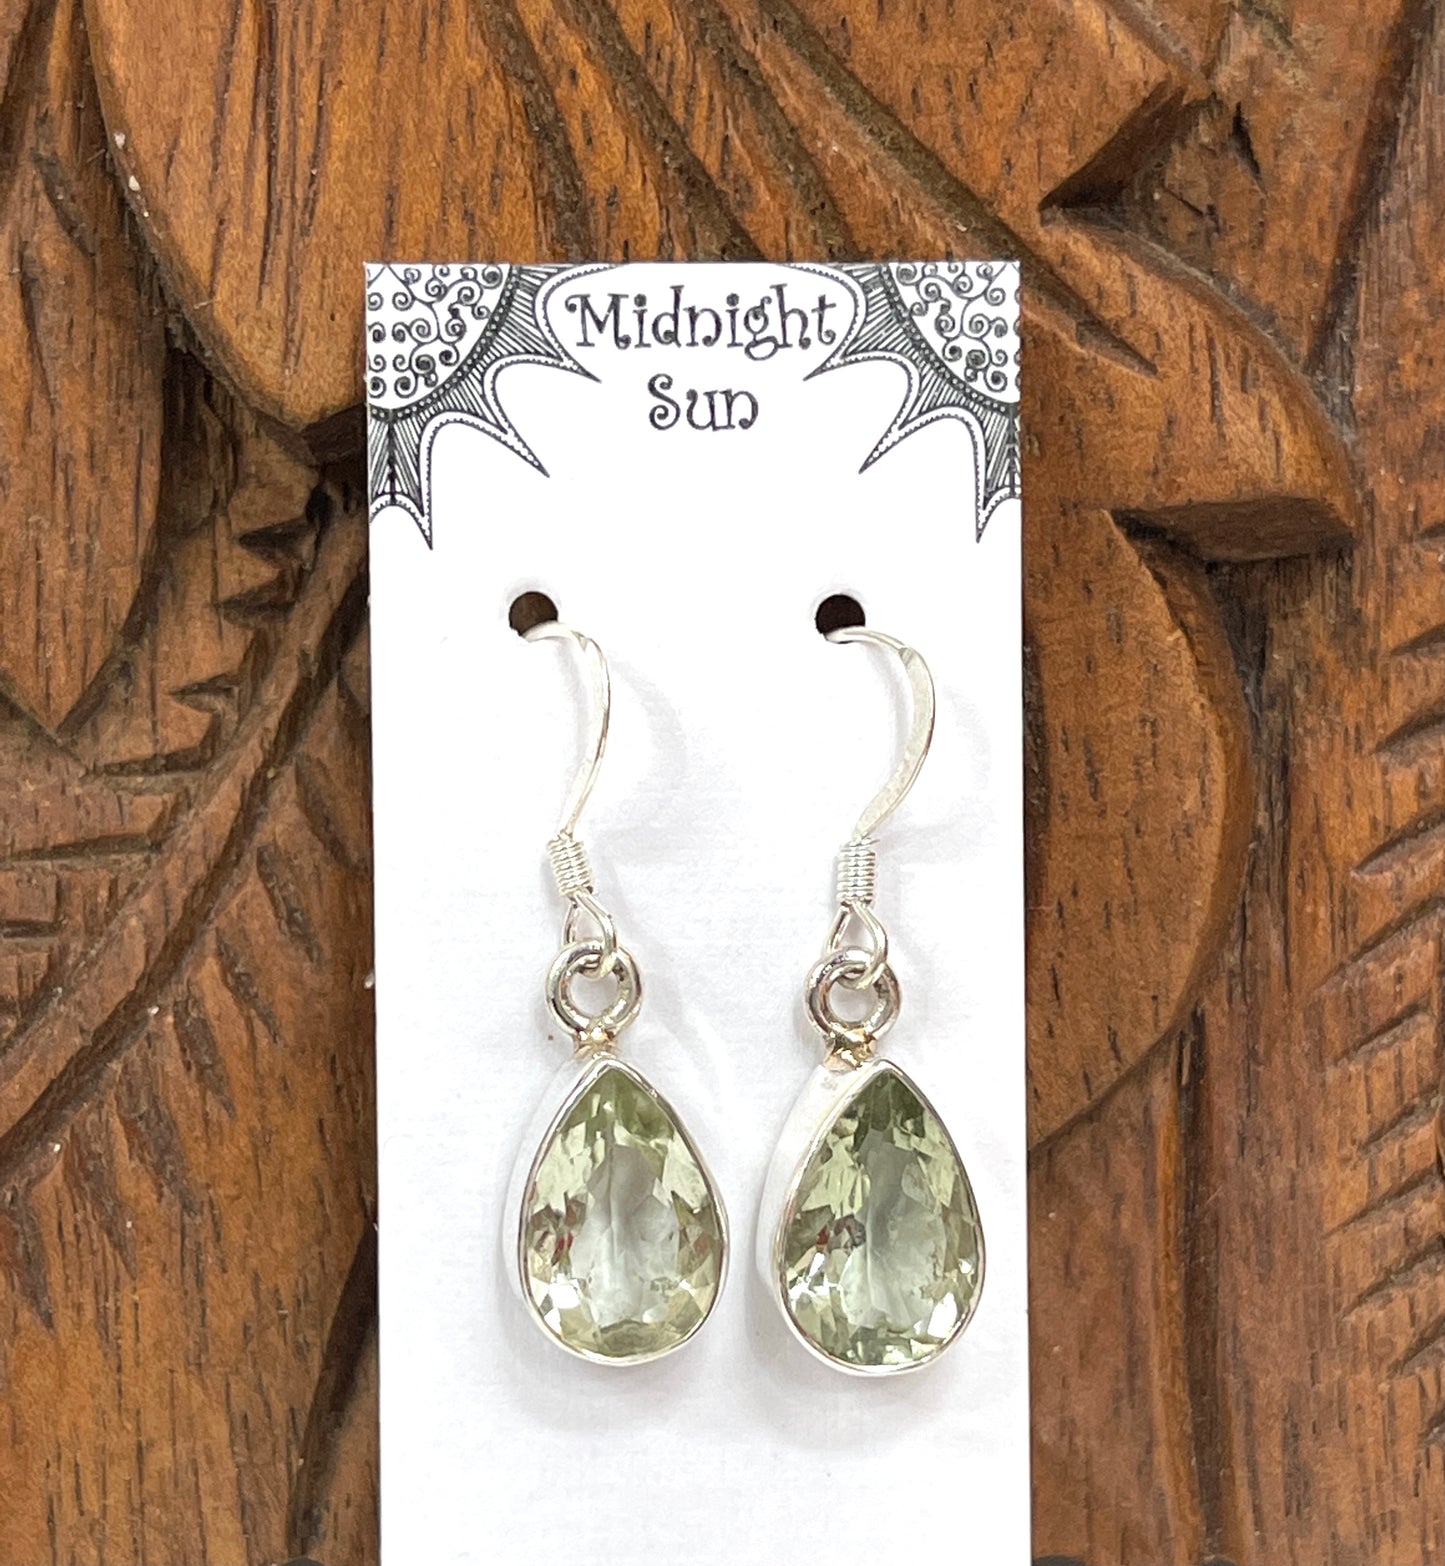 Green Amethyst Sterling Silver Earrings